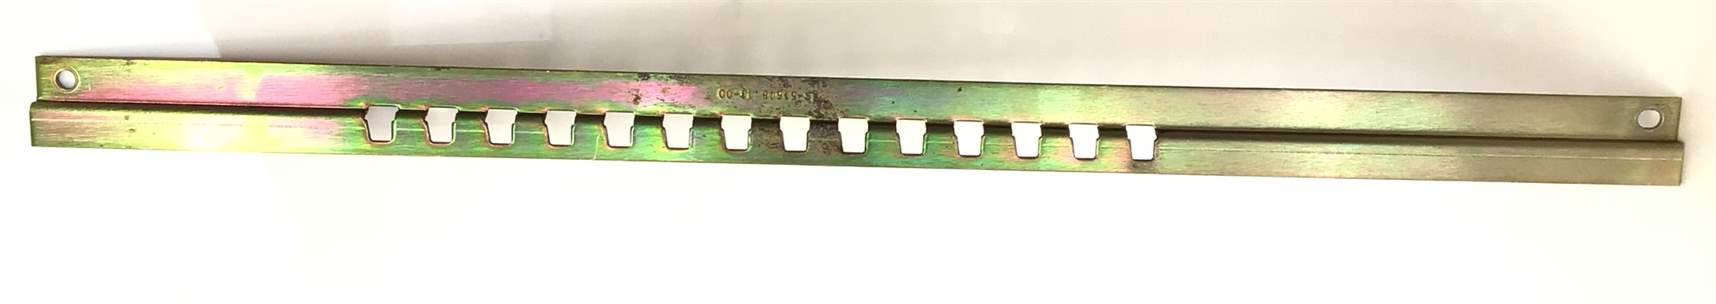 Seat rack adjustment bracket (Used)